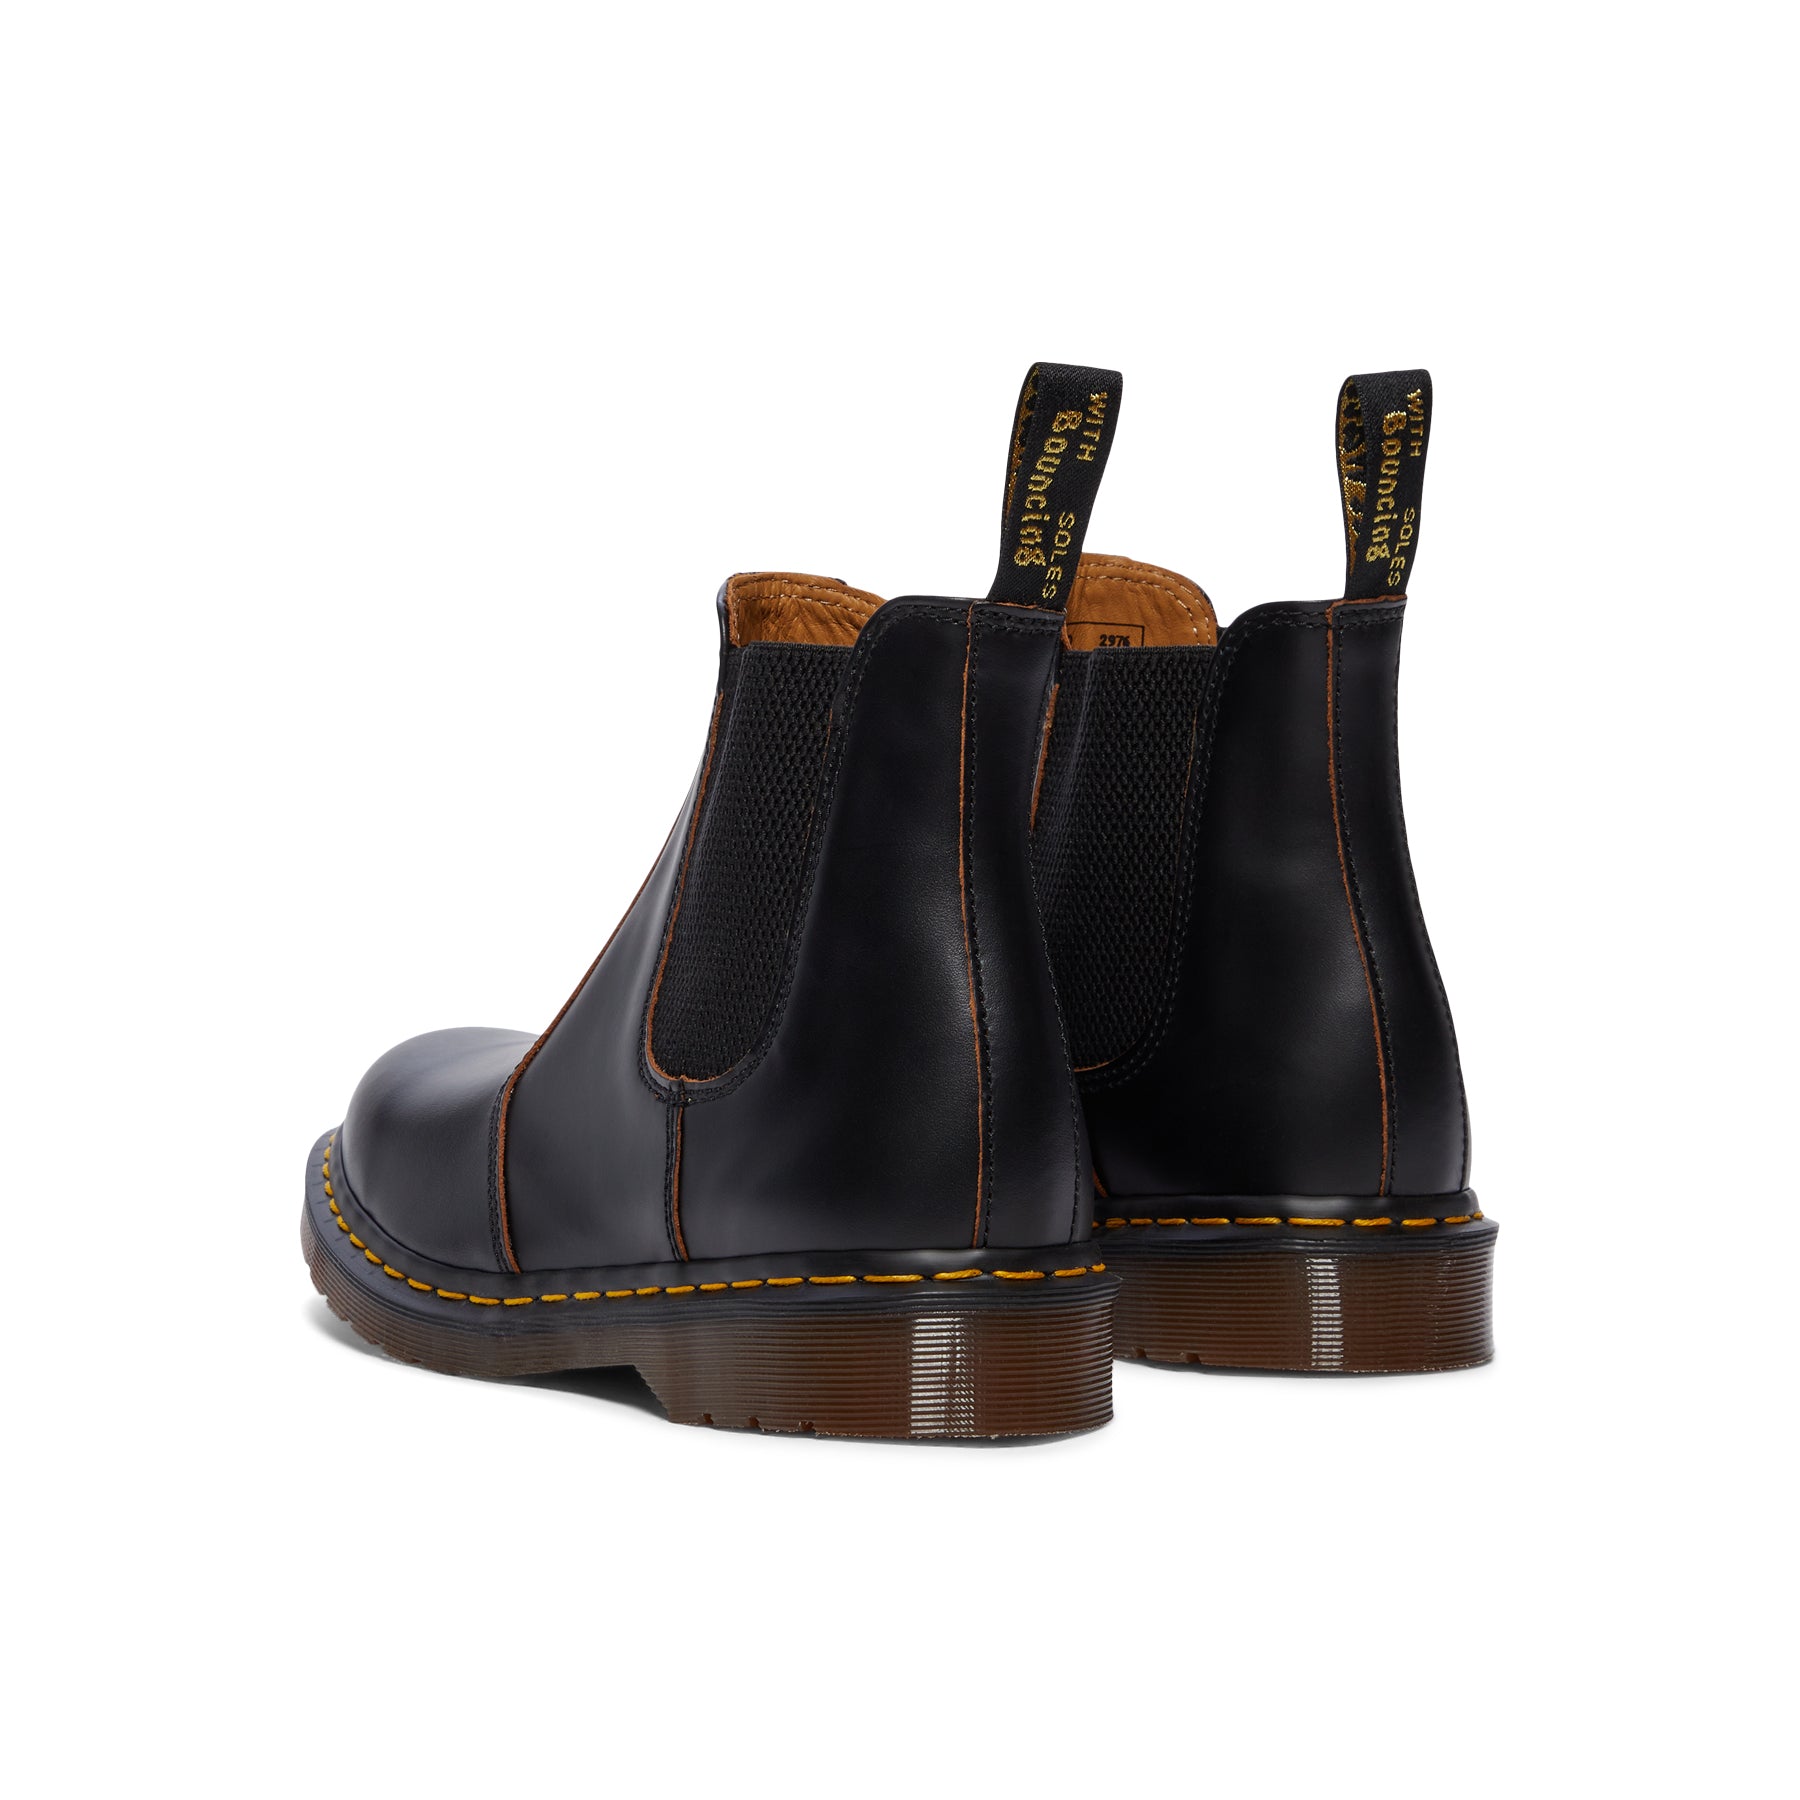 Dylon 2100310101 Leather Shoe DYE BLACK NOIR 50ml 